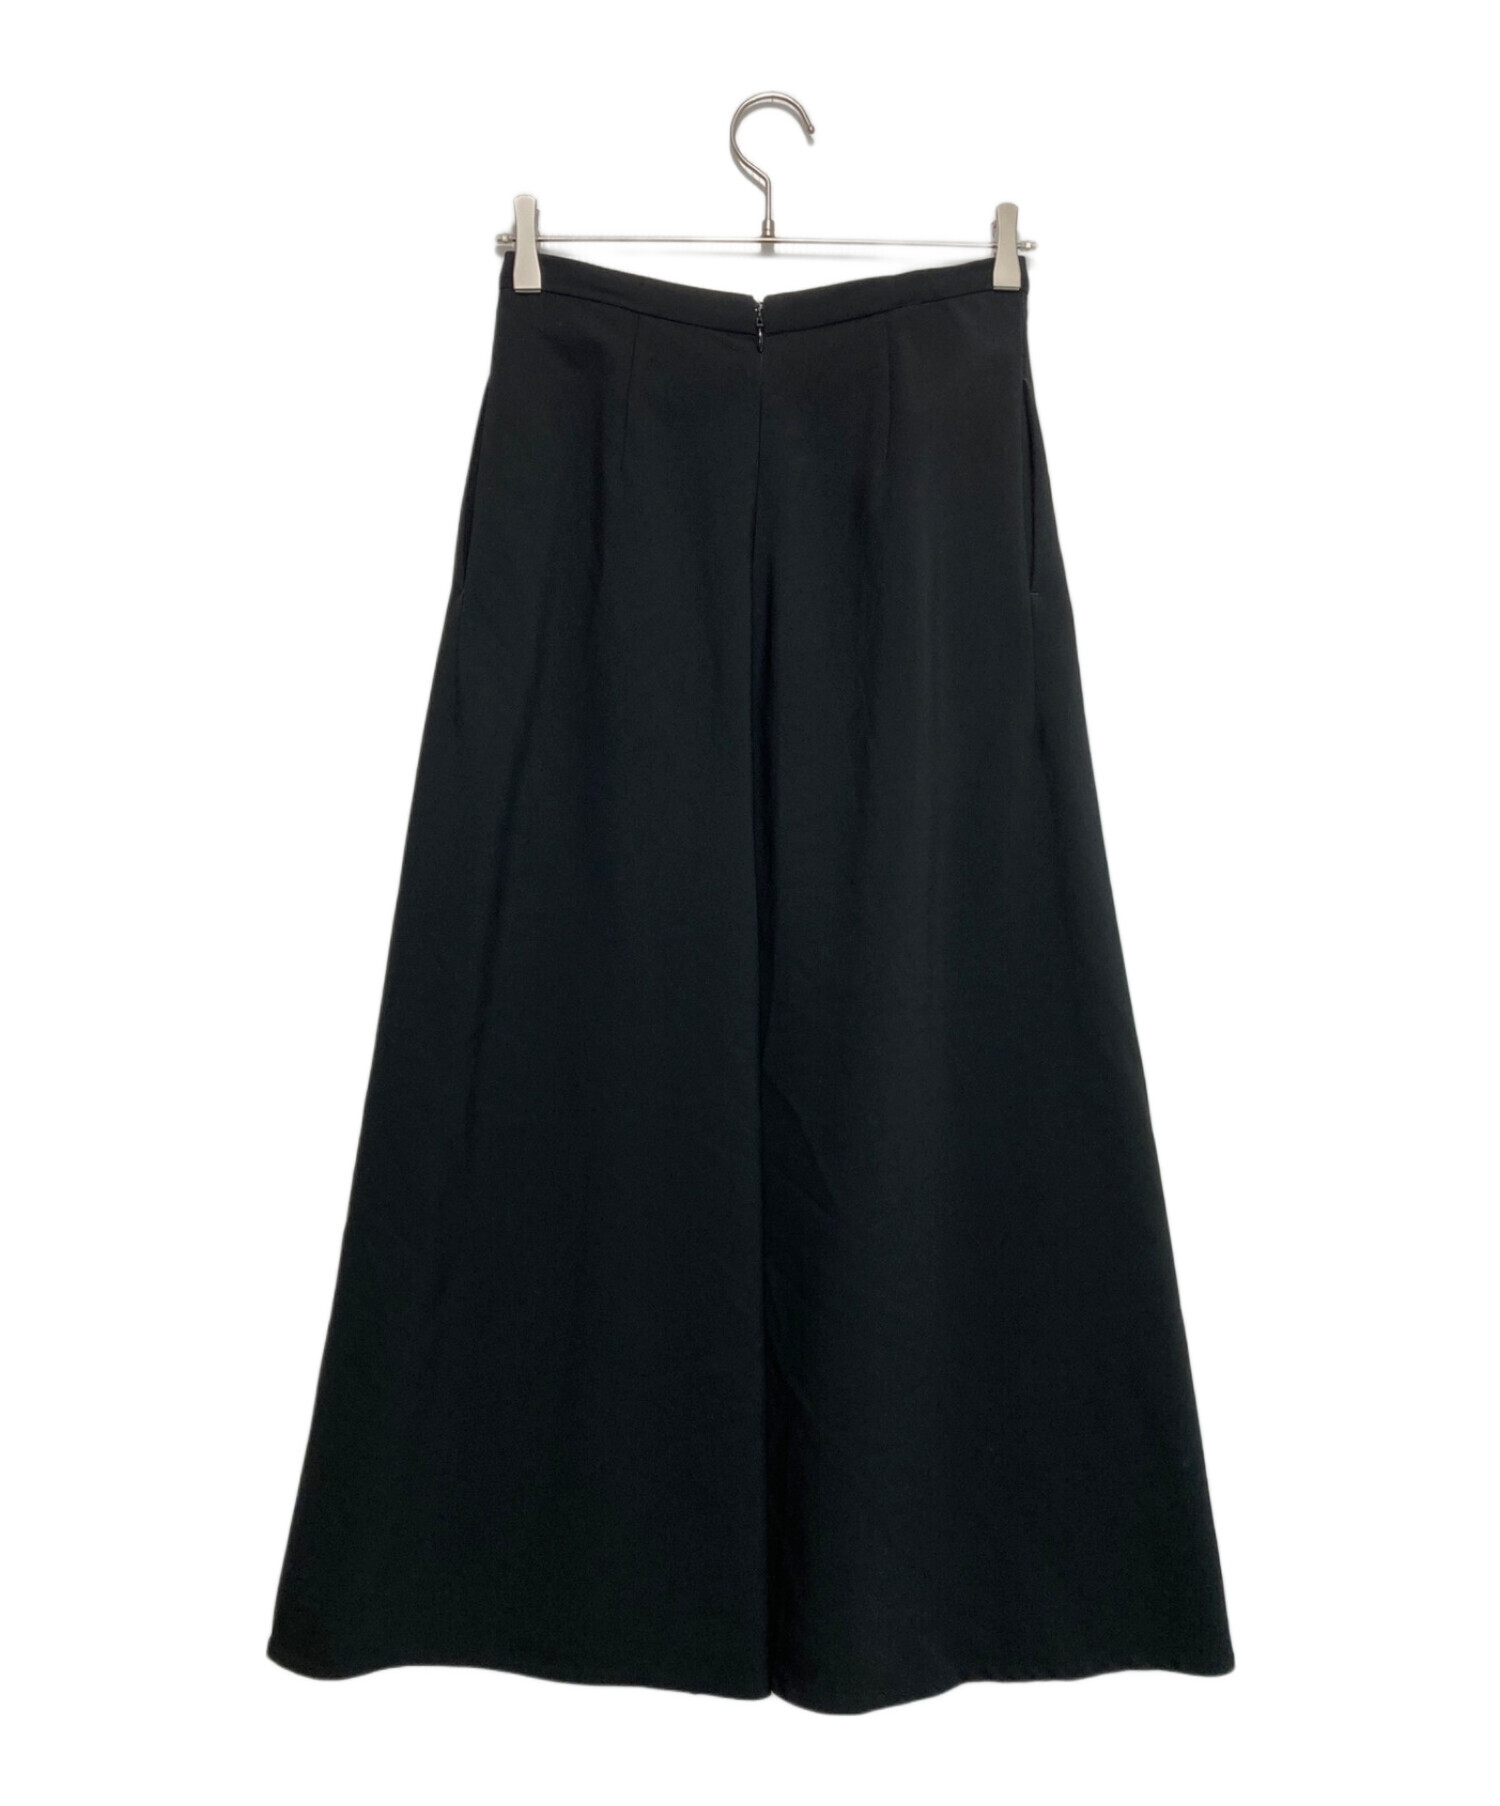 MUSE de Deuxieme Classe (ミューズ ドゥーズィエム クラス) EDEN Flare スカート ブラック サイズ:36